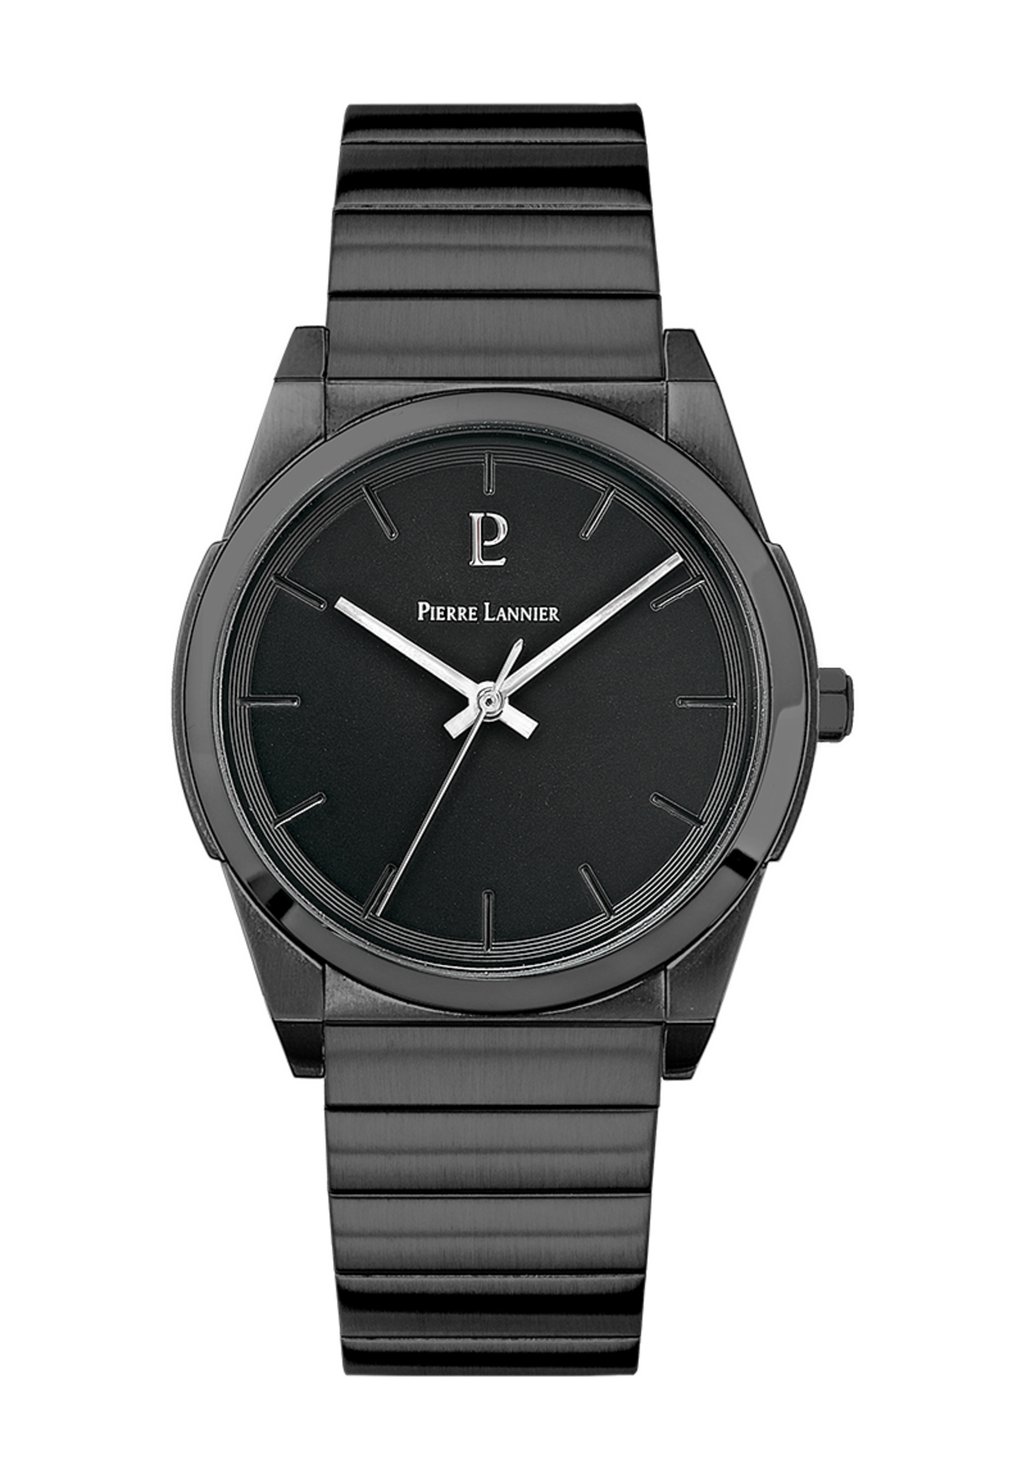 Часы CANDIDE Pierre Lannier, цвет noir